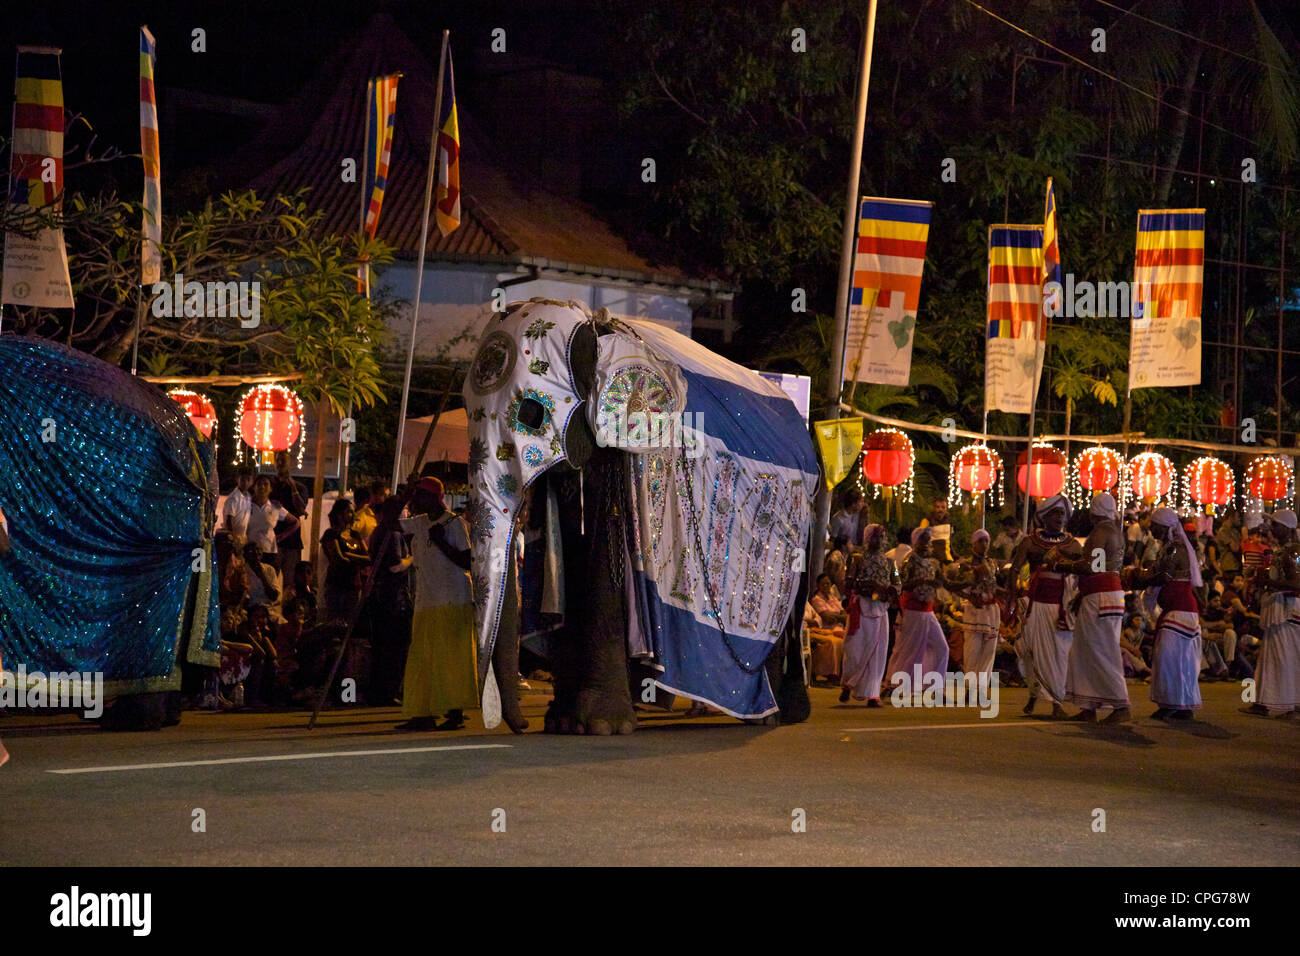 Ceremonial elephant in the Navam Maha Perahera, Colombo, Sri Lanka, Asia Stock Photo